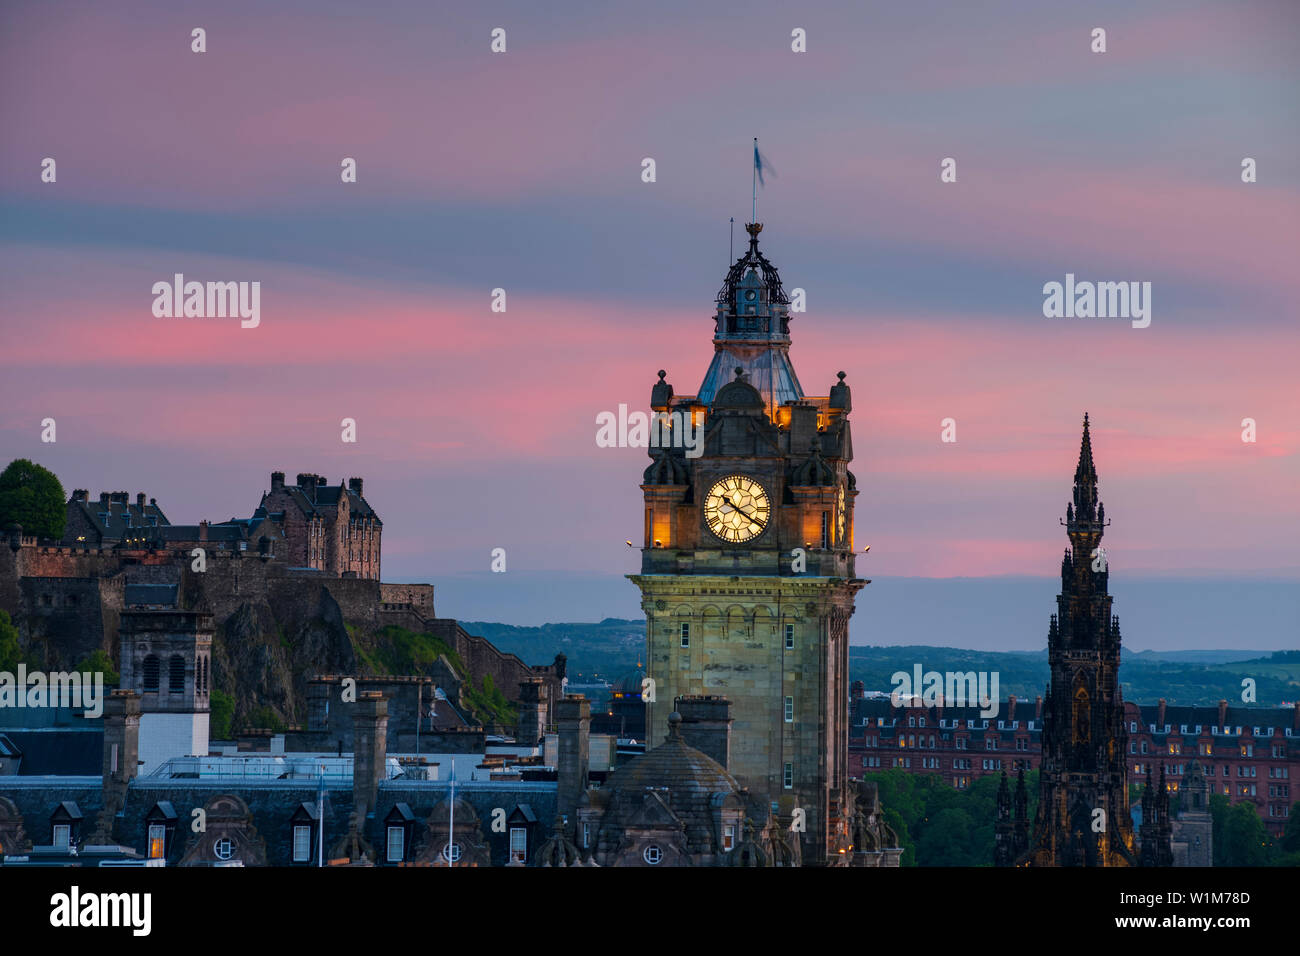 Das Balmoral, ursprünglich als der North British Station Hotel, von Calton Hill, ein UNESCO-Weltkulturerbe, Edinburgh, Schottland gesehen. Stockfoto